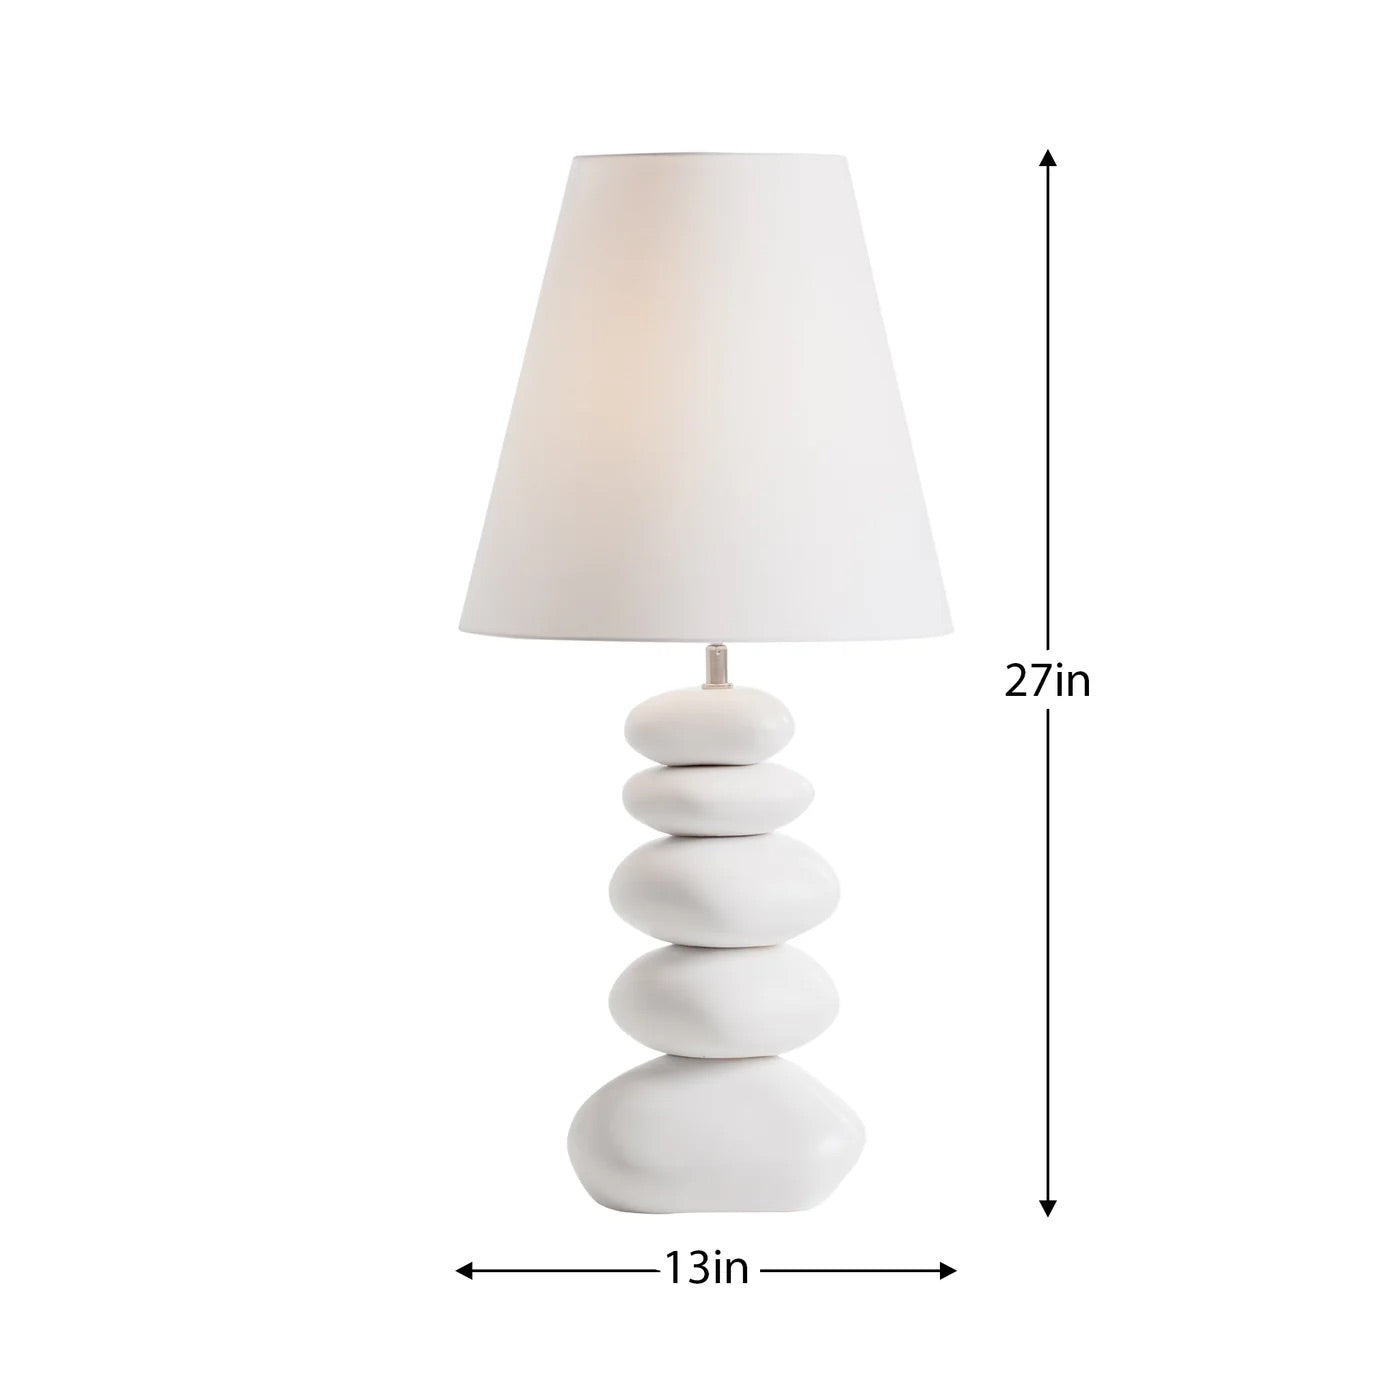 TABLE LAMP NORDIC - WHITE CERAMIC